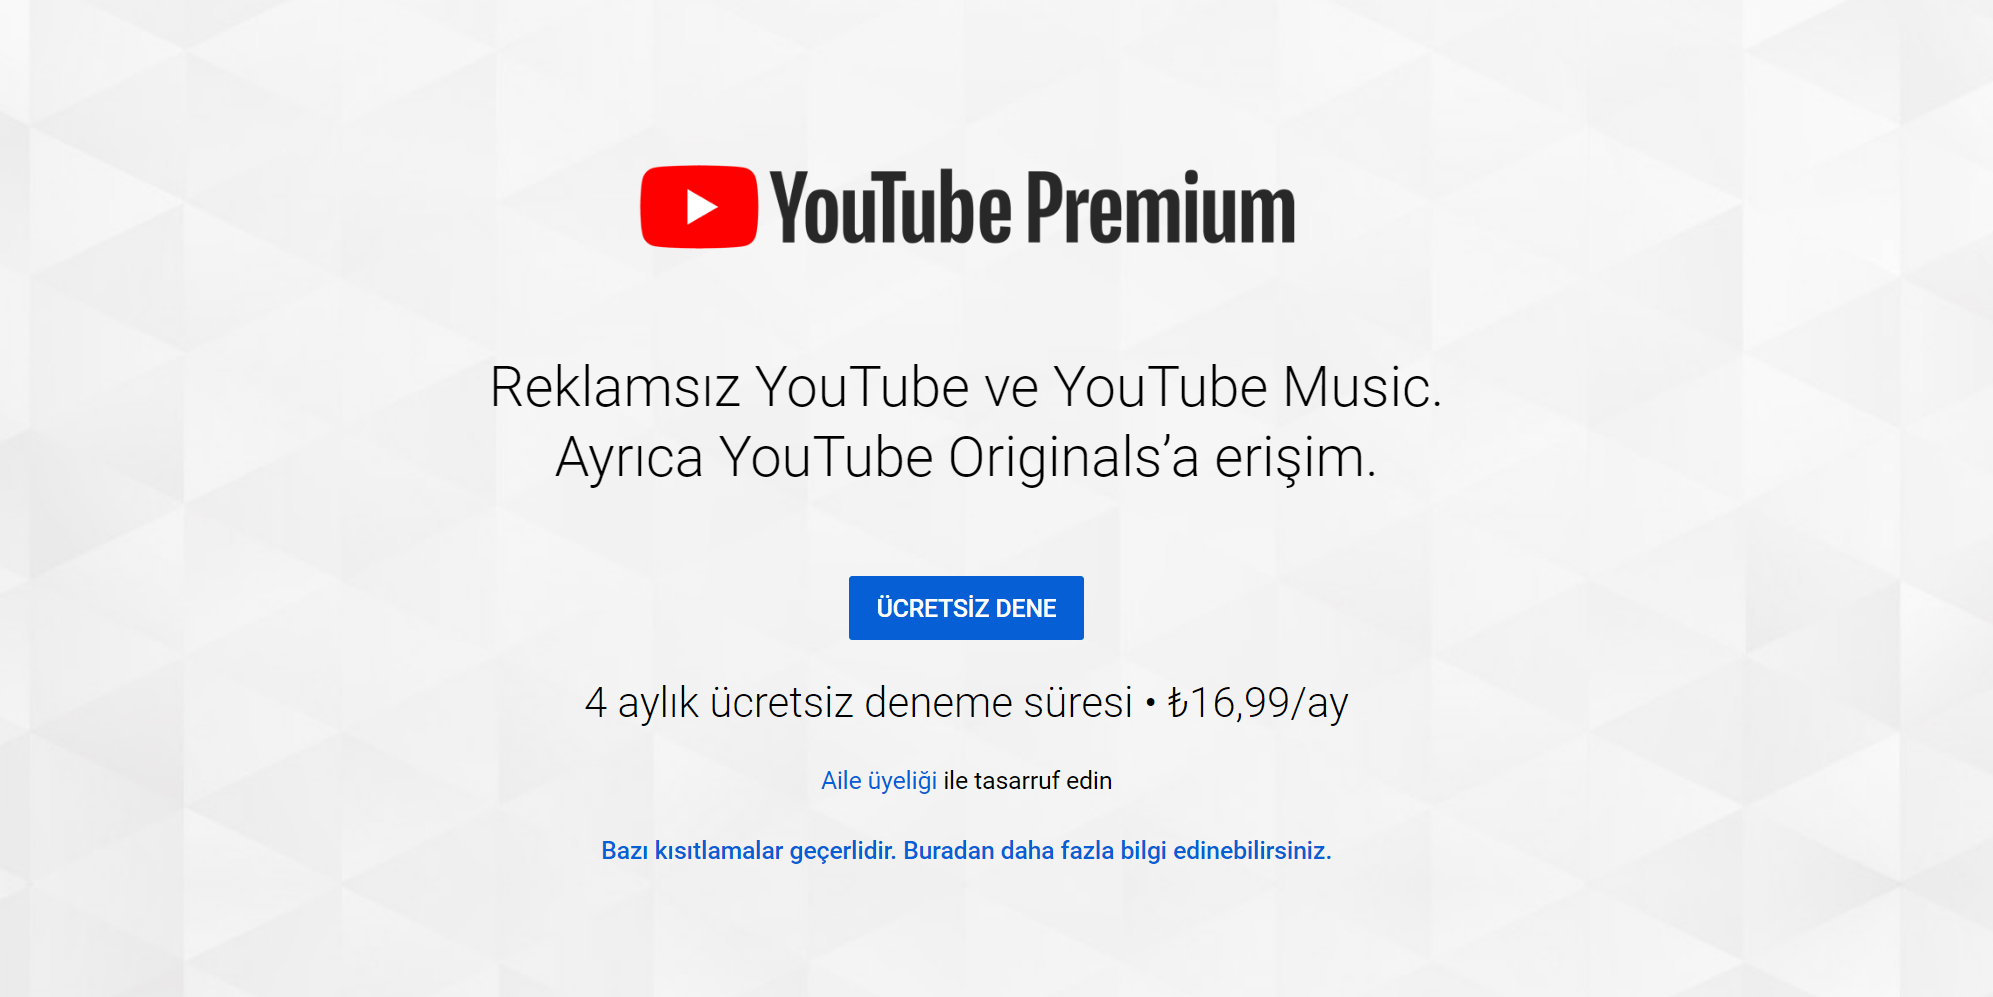 youtube premium türkiye fiyatları